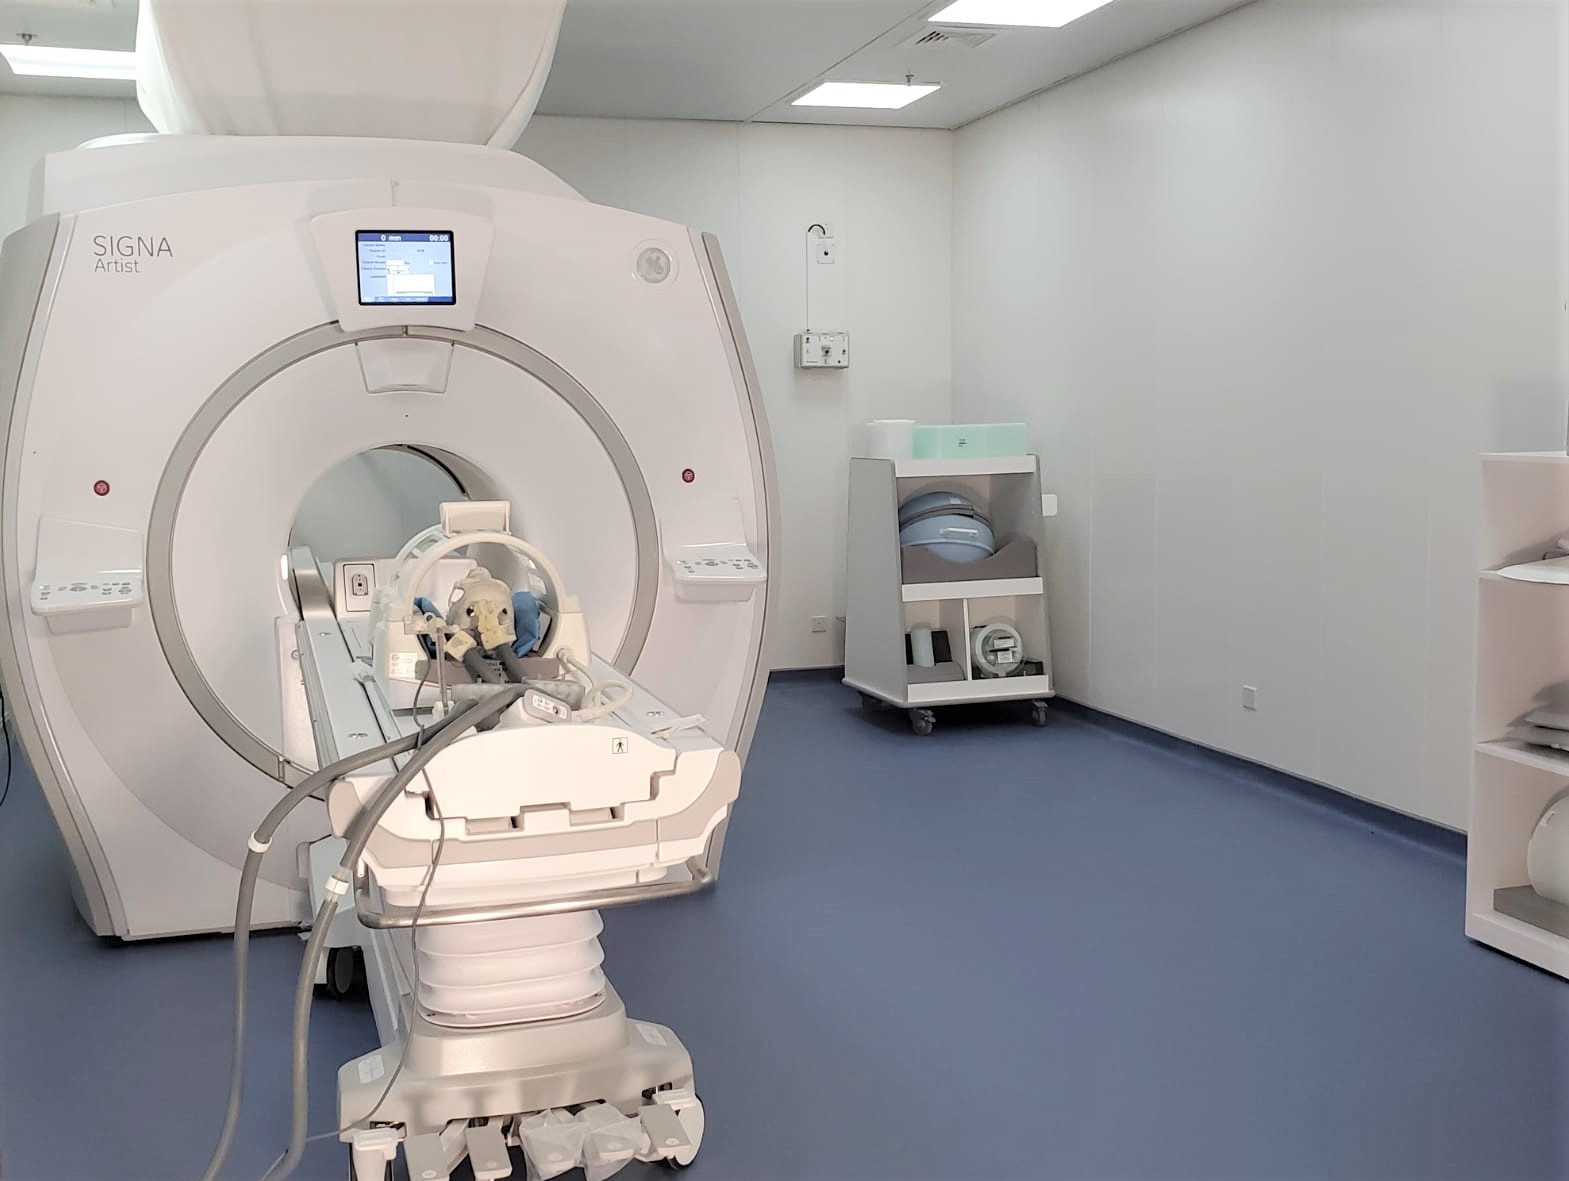 術中MRI 導航手術機械人